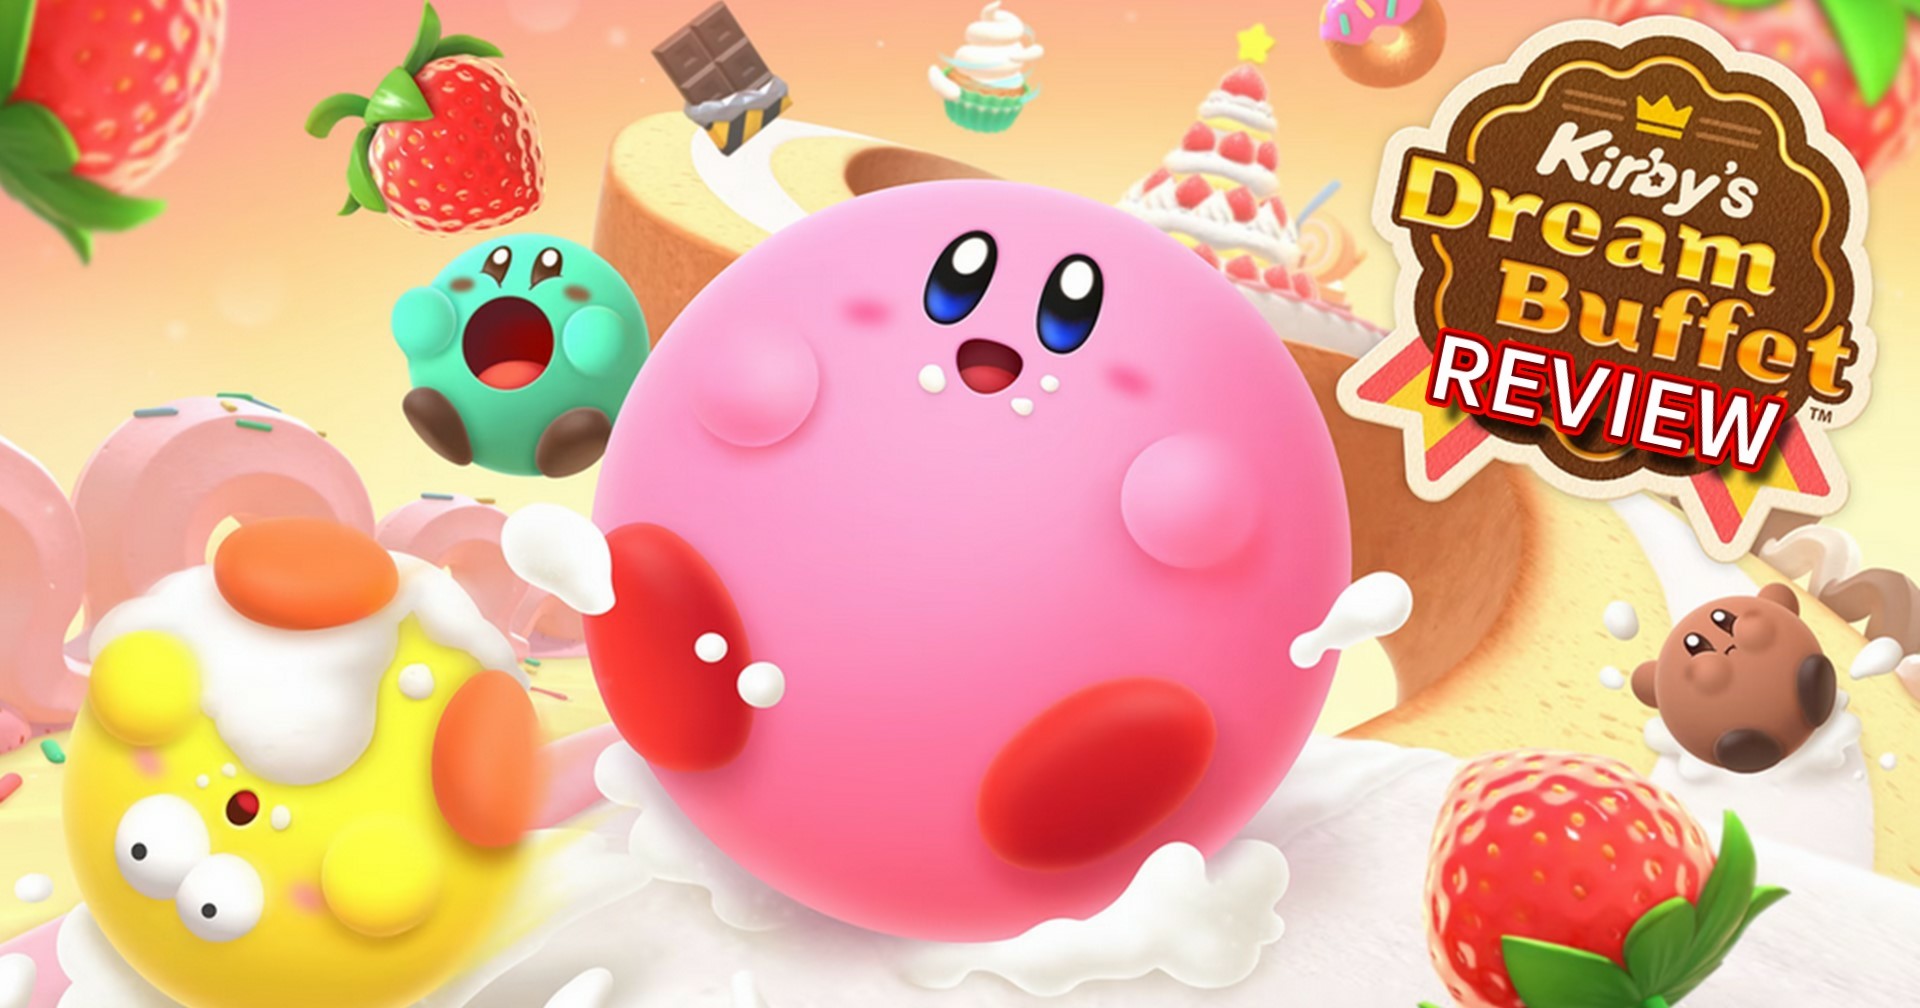 รีวิวเกม Kirby’s Dream Buffet เจ้าอ้วนกลมฉบับกินไม่อั้น